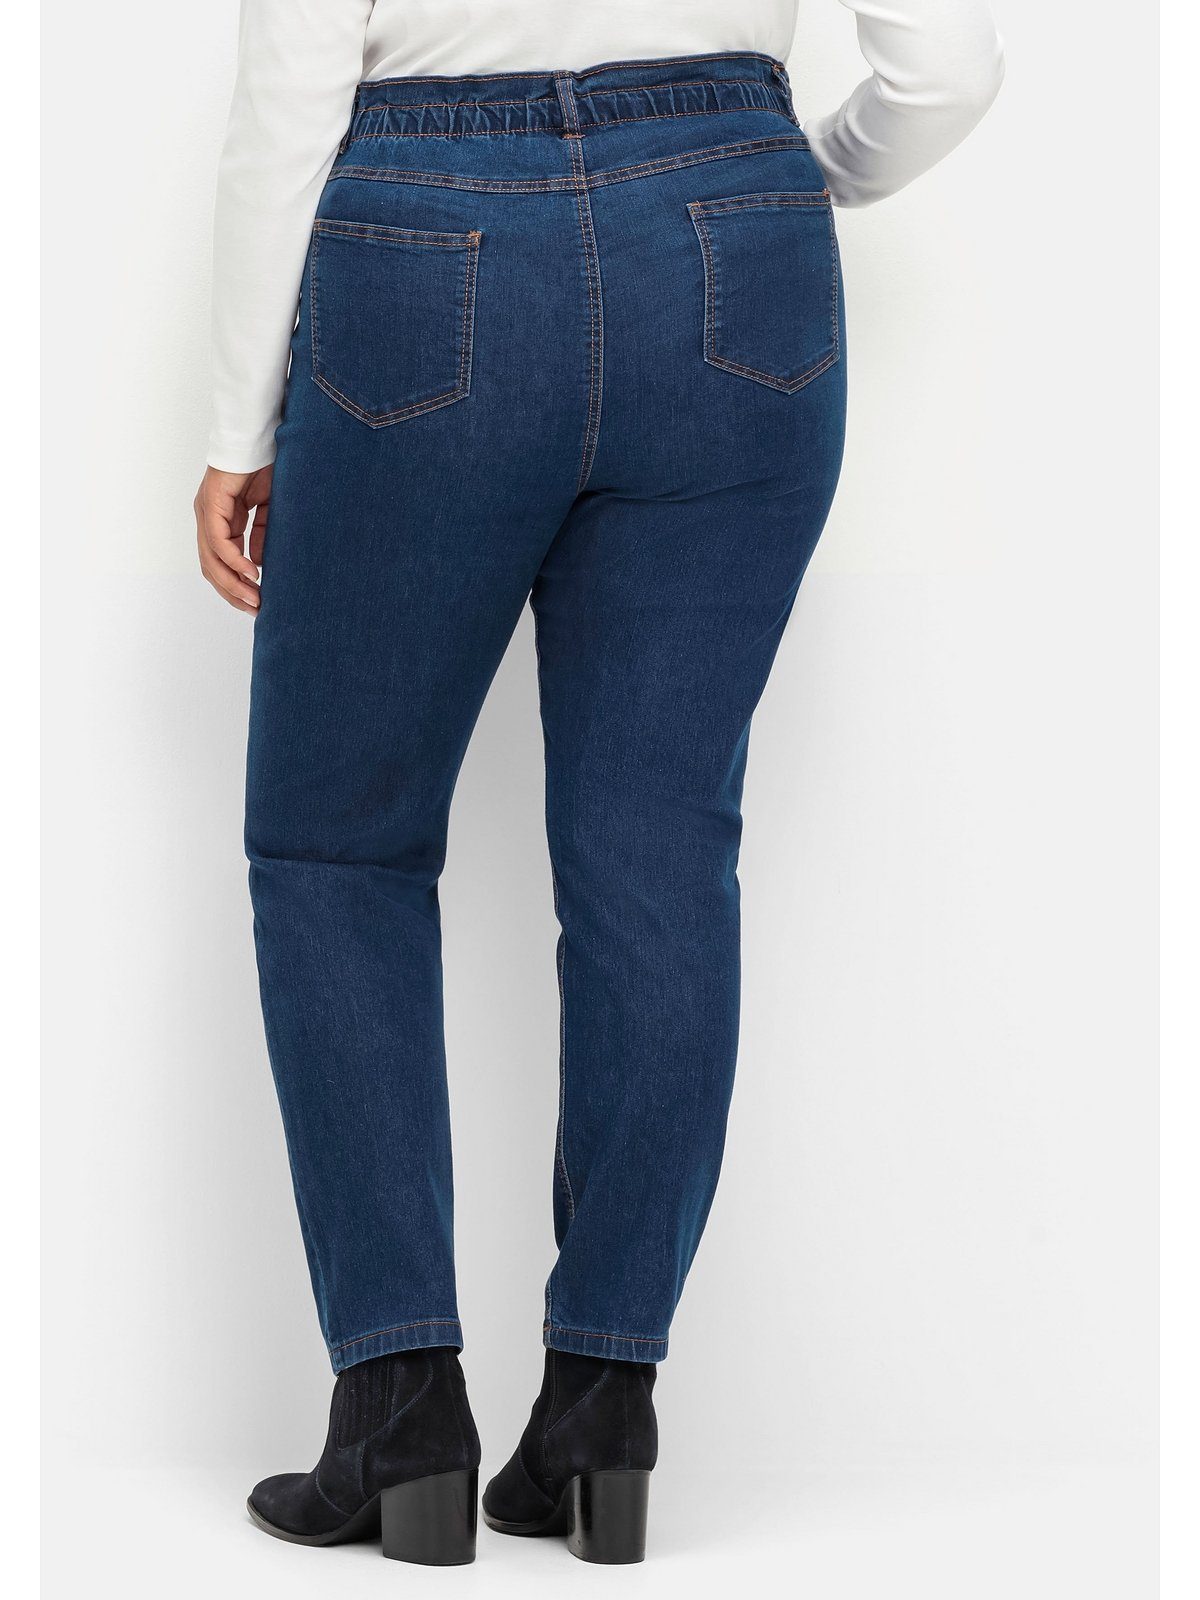 Jeans extrahohen Gerade Paperbag-Schnitt Sheego Größen blue Denim dark im Große